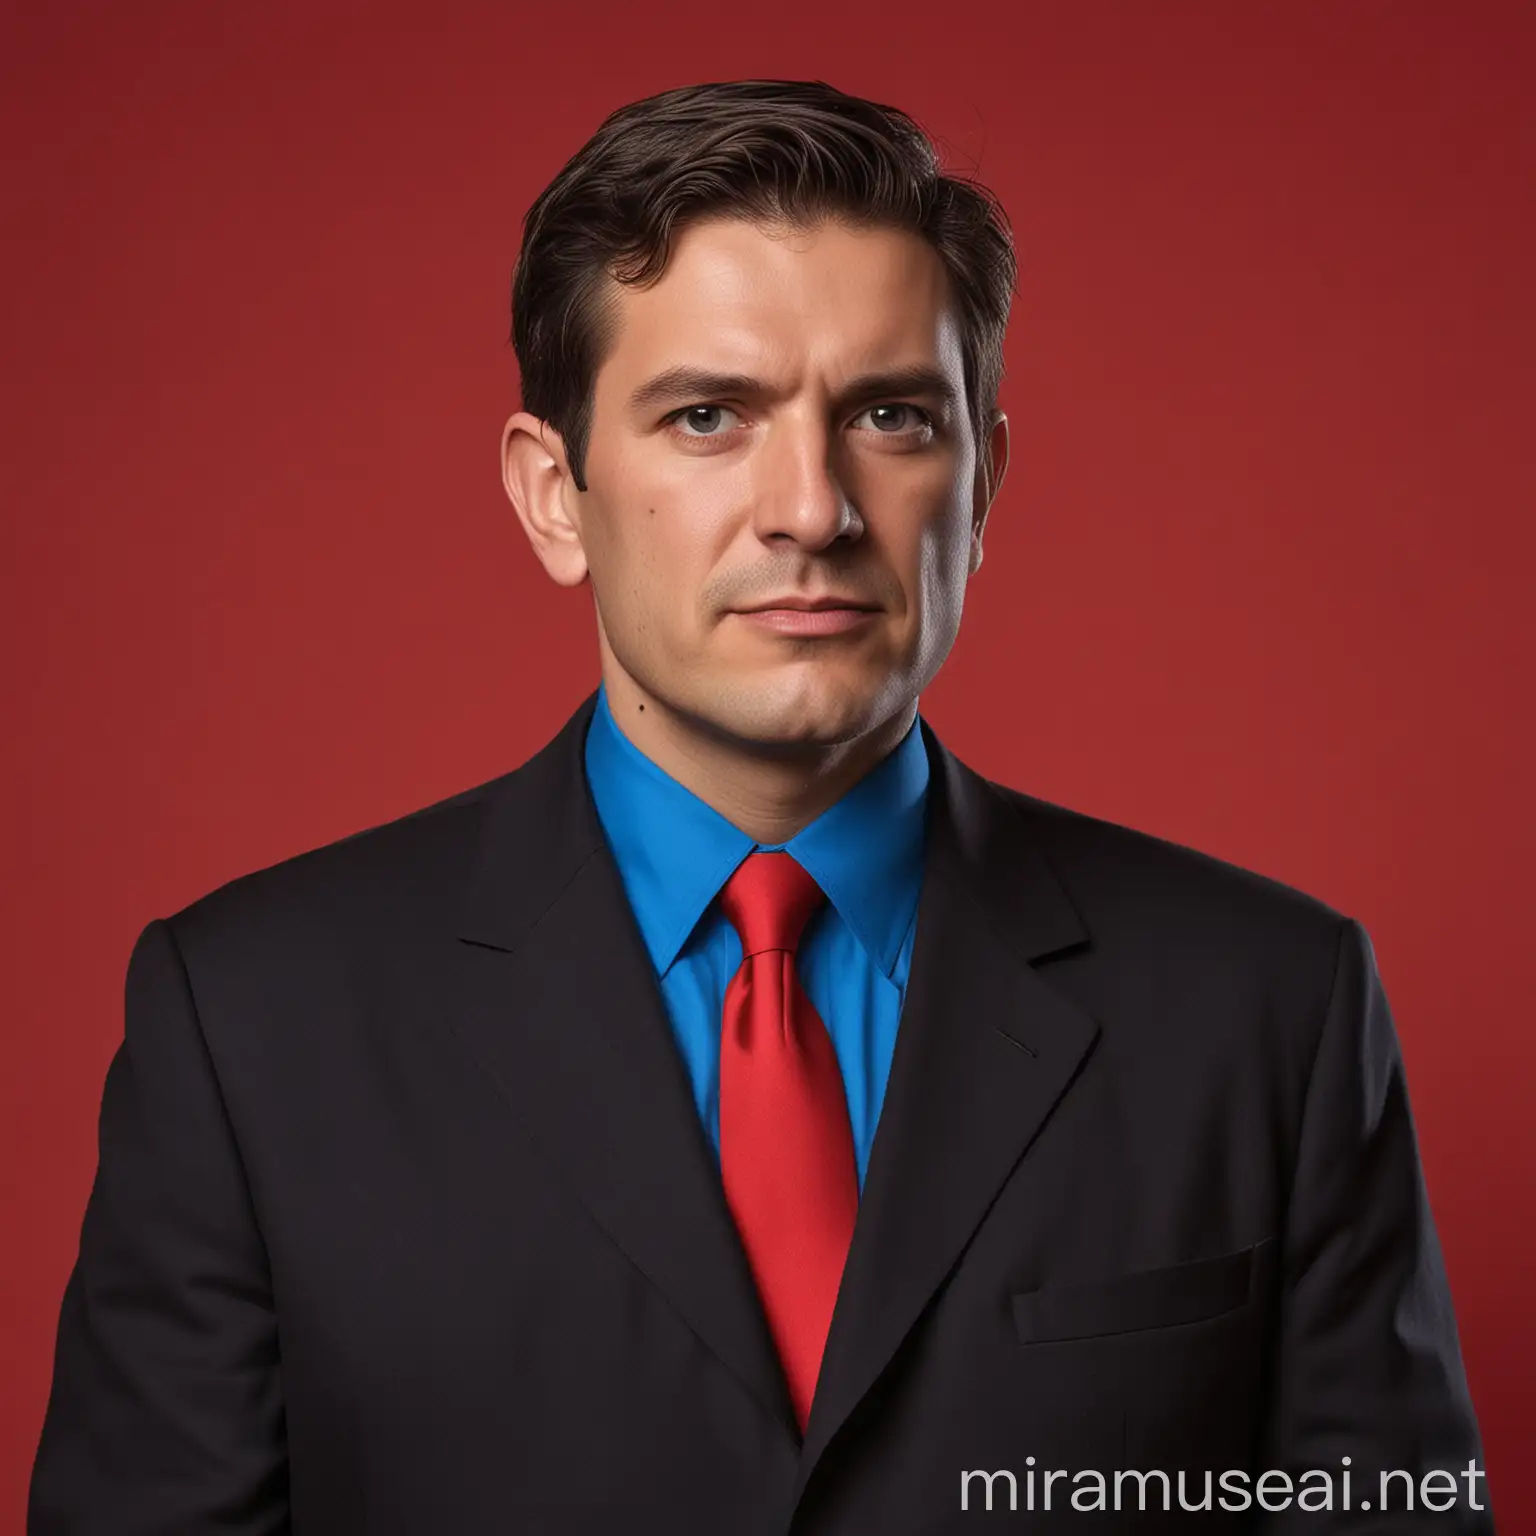 Político socialista con traje negro y camisa azul  con fondo rojo